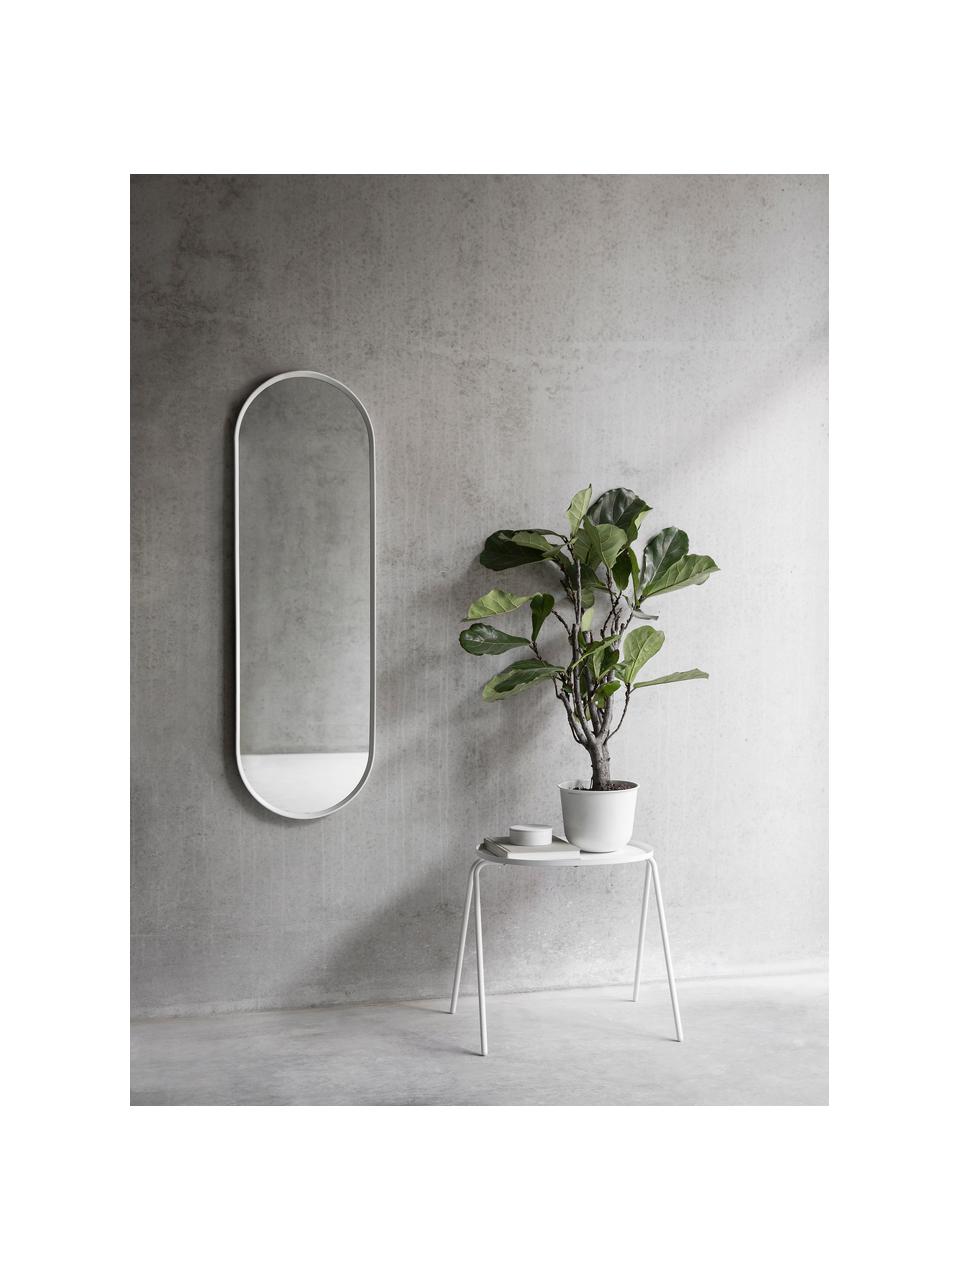 Ovaler Wandspiegel Norm, Rahmen: Aluminium, pulverbeschich, Spiegelfläche: Spiegelglas, Weiß, B 40 x H 130 cm